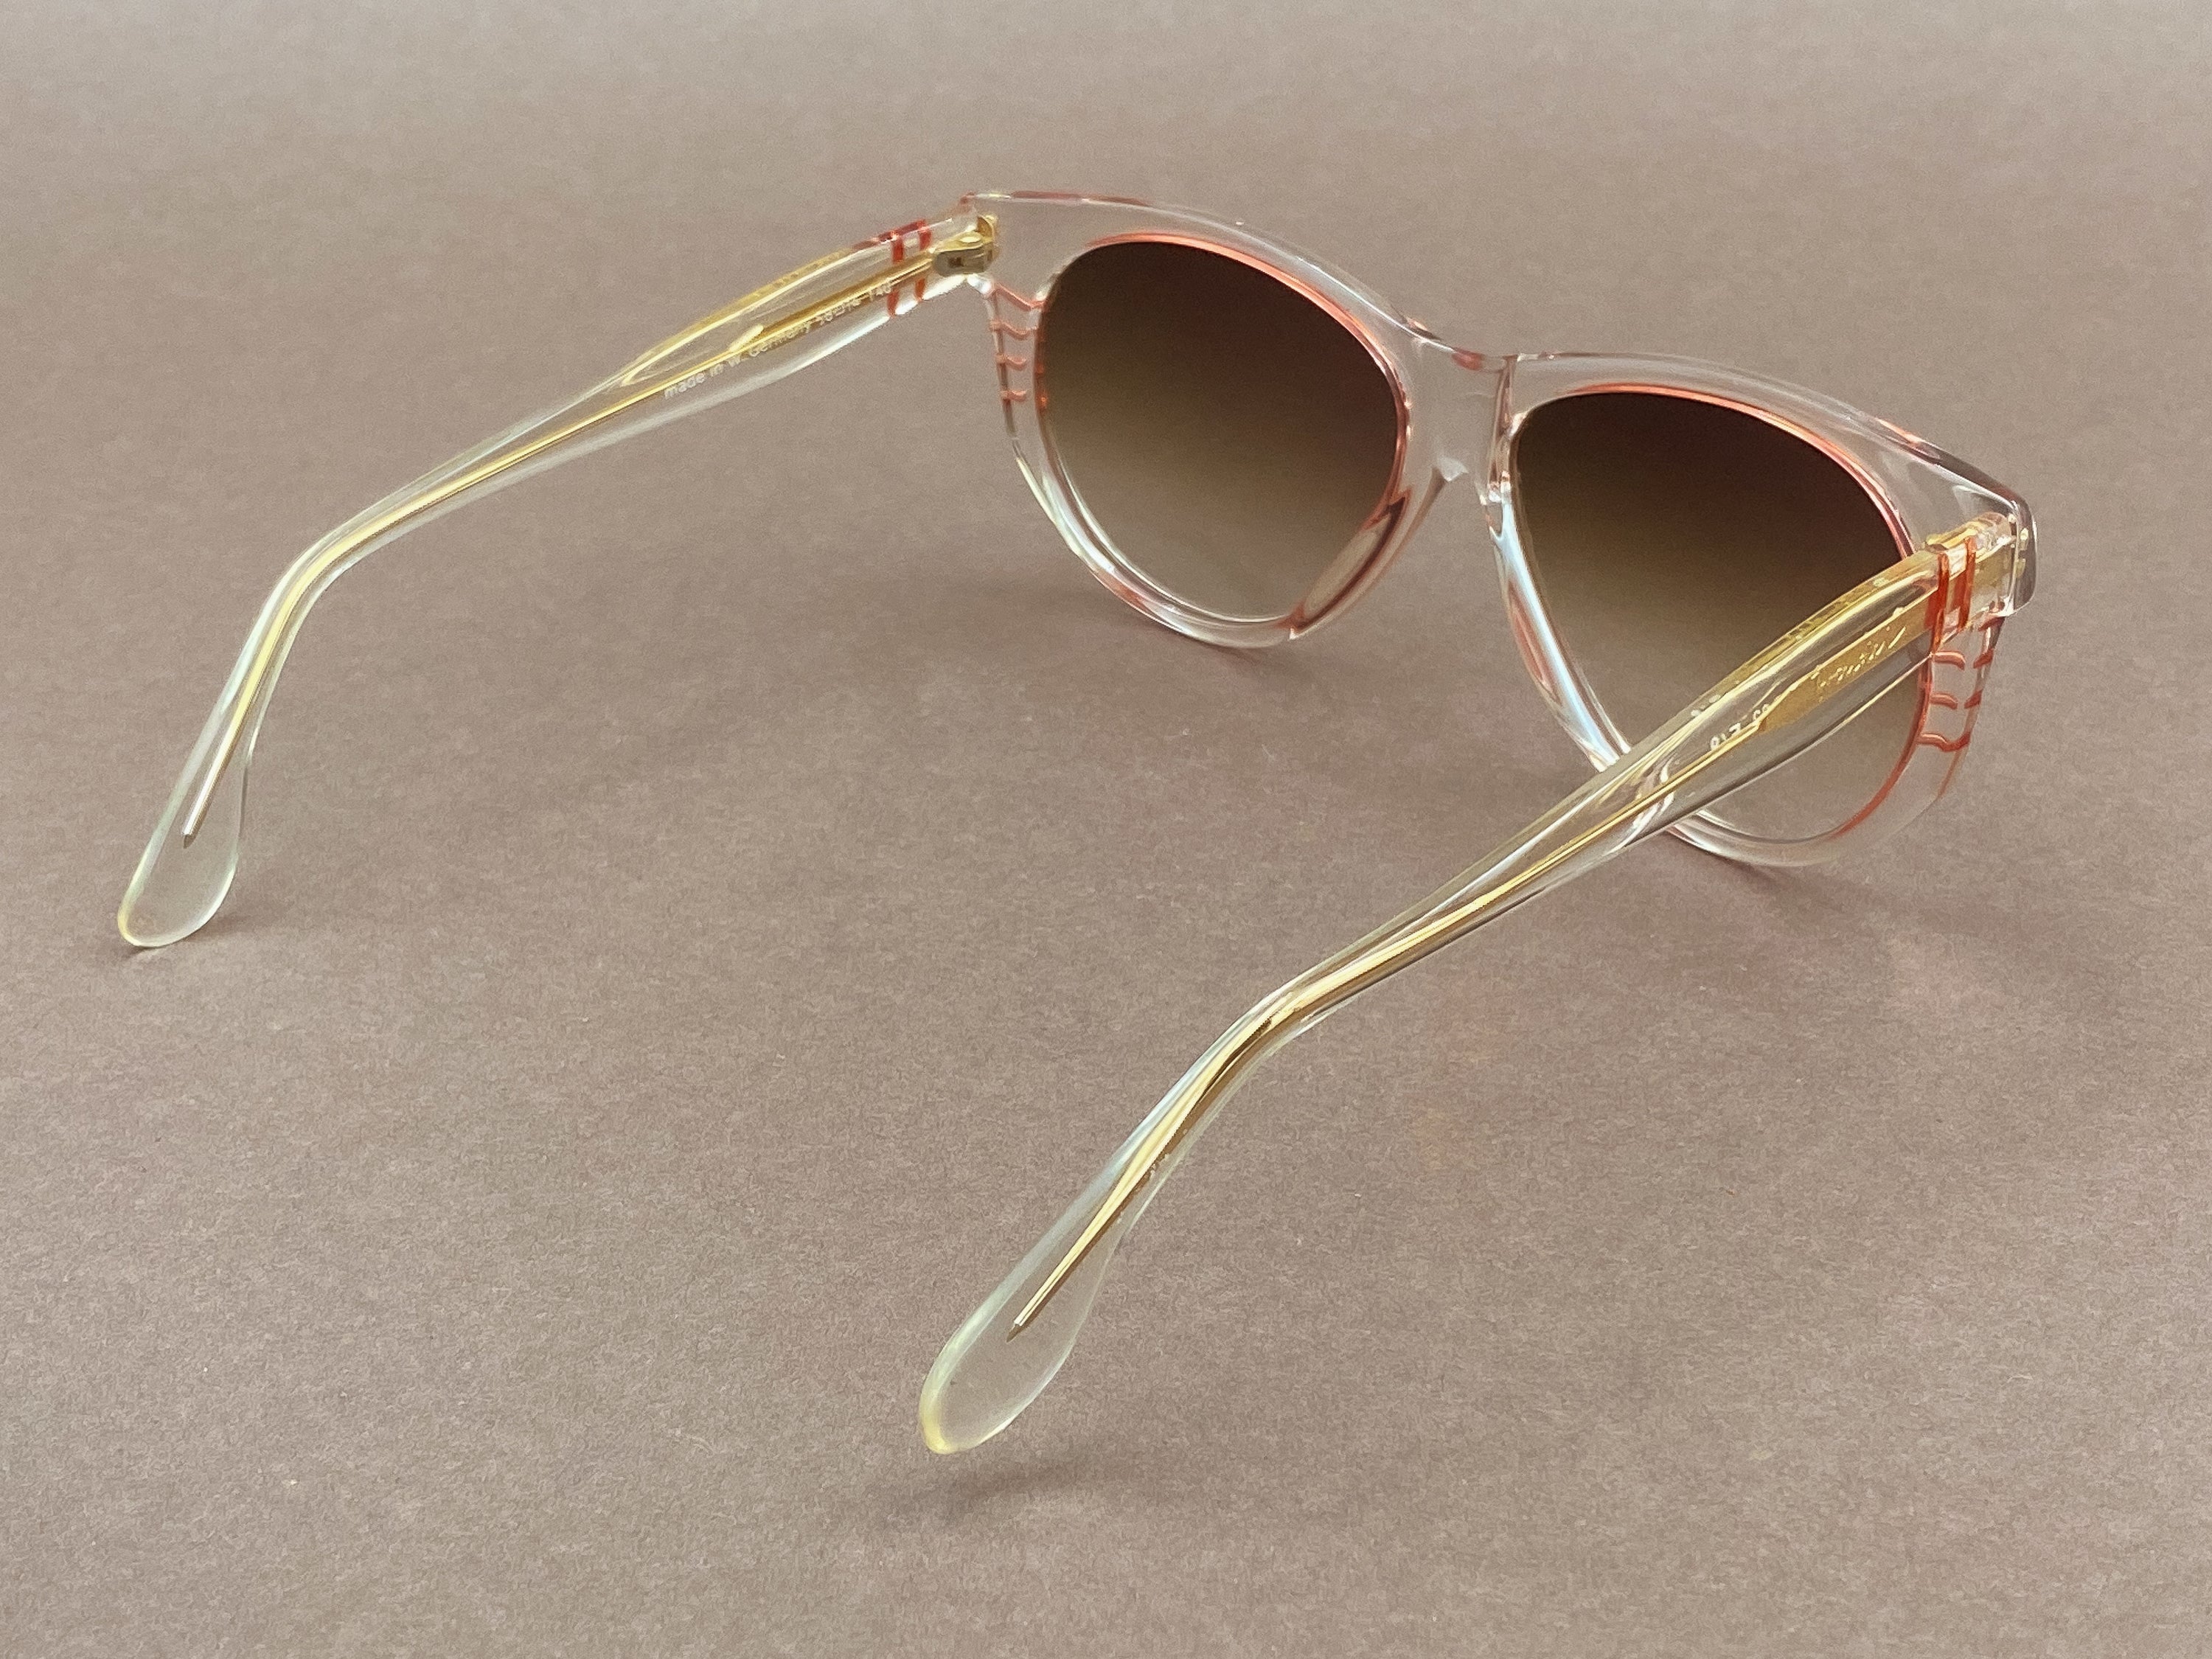 Brendel D92 F49 ladies sunglasses